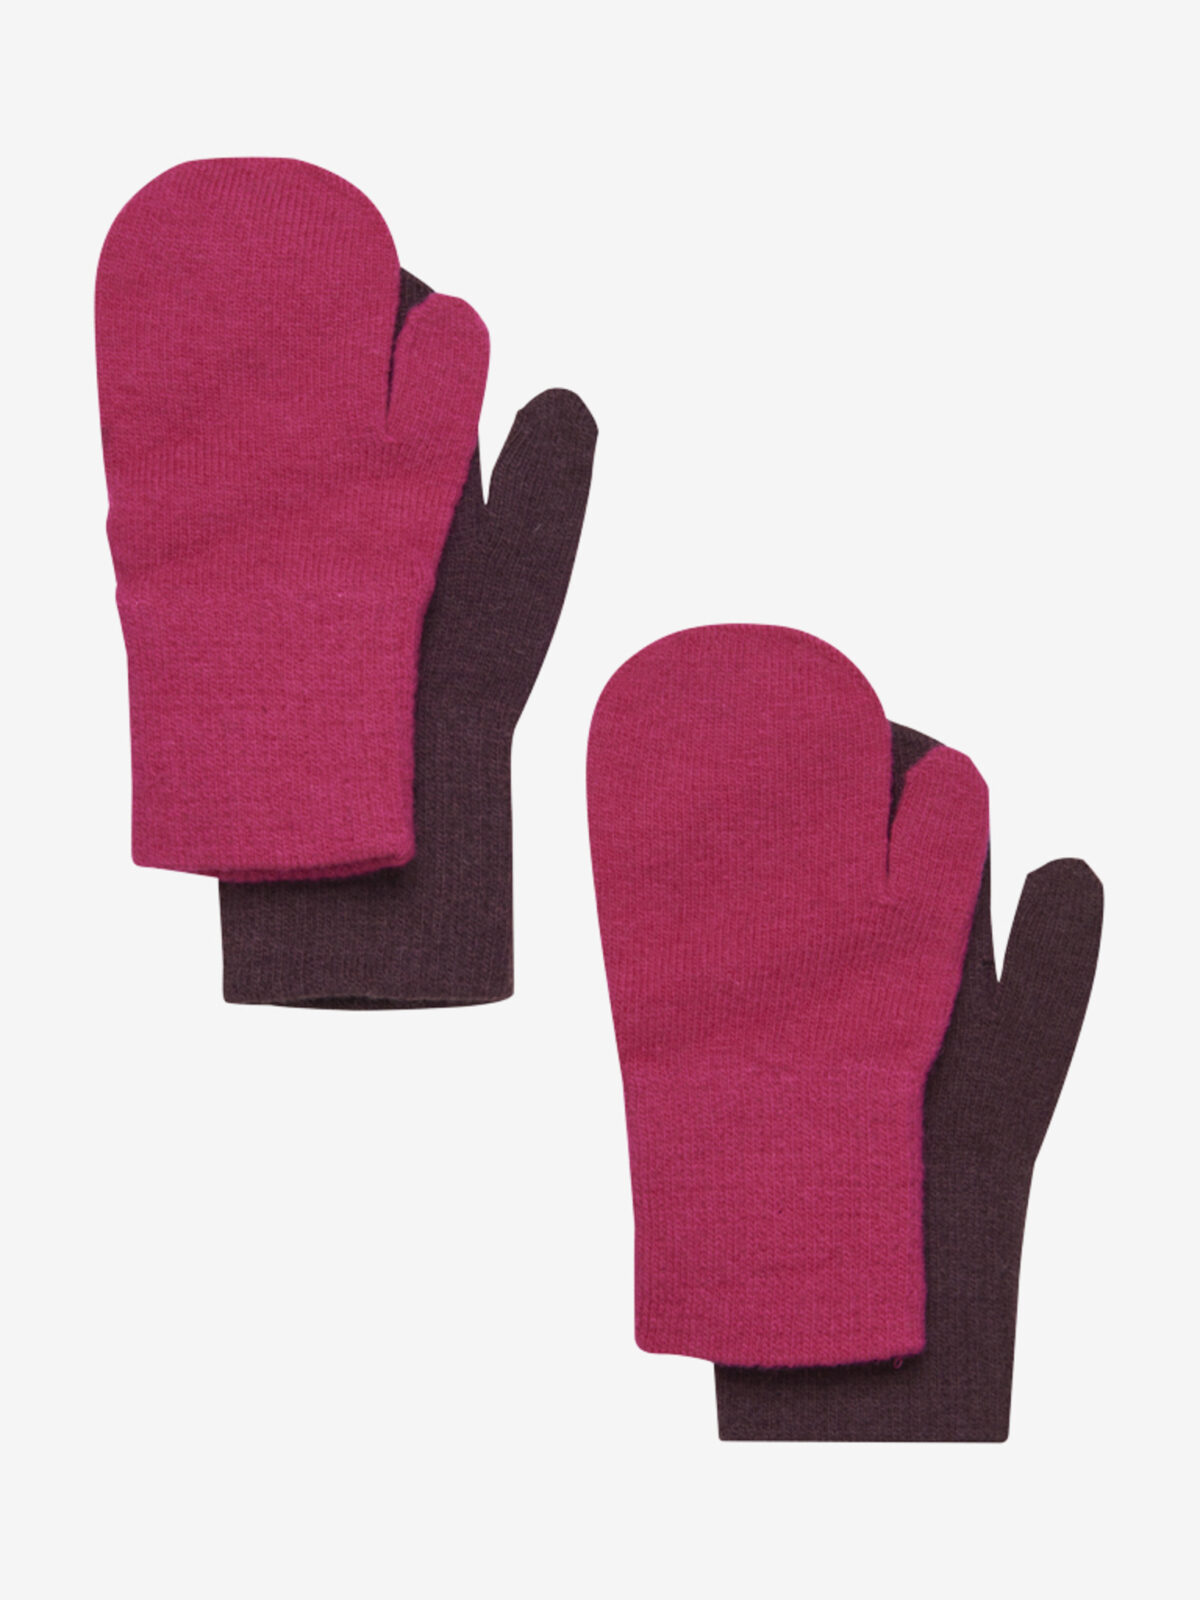 CeLaVi, lambavillaga labakud,(2 pakk) Pink Villariided - HellyK - Kvaliteetsed lasteriided, villariided, barefoot jalatsid